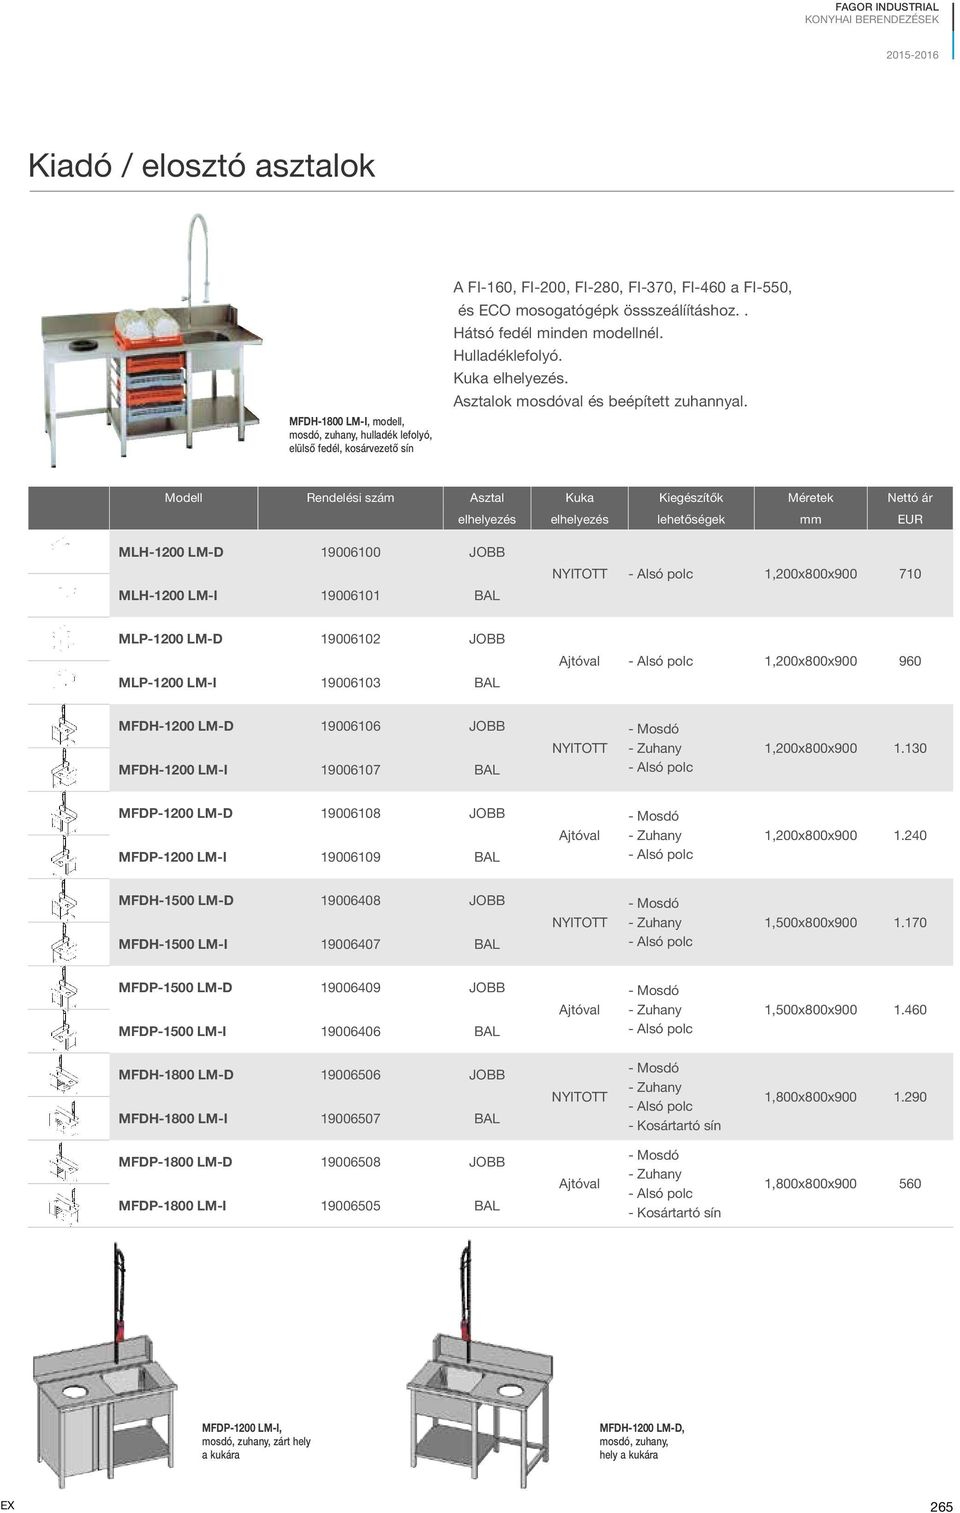 Modell Rendelési szám Asztal Kuka Kiegészítők Méretek Nettó ár elhelyezés elhelyezés lehetőségek mm EUR MLH-1200 LM-D 19006100 JOBB MLH-1200 LM-I 19006101 BAL NYITOTT 1,200x800x900 710 MLP-1200 LM-D